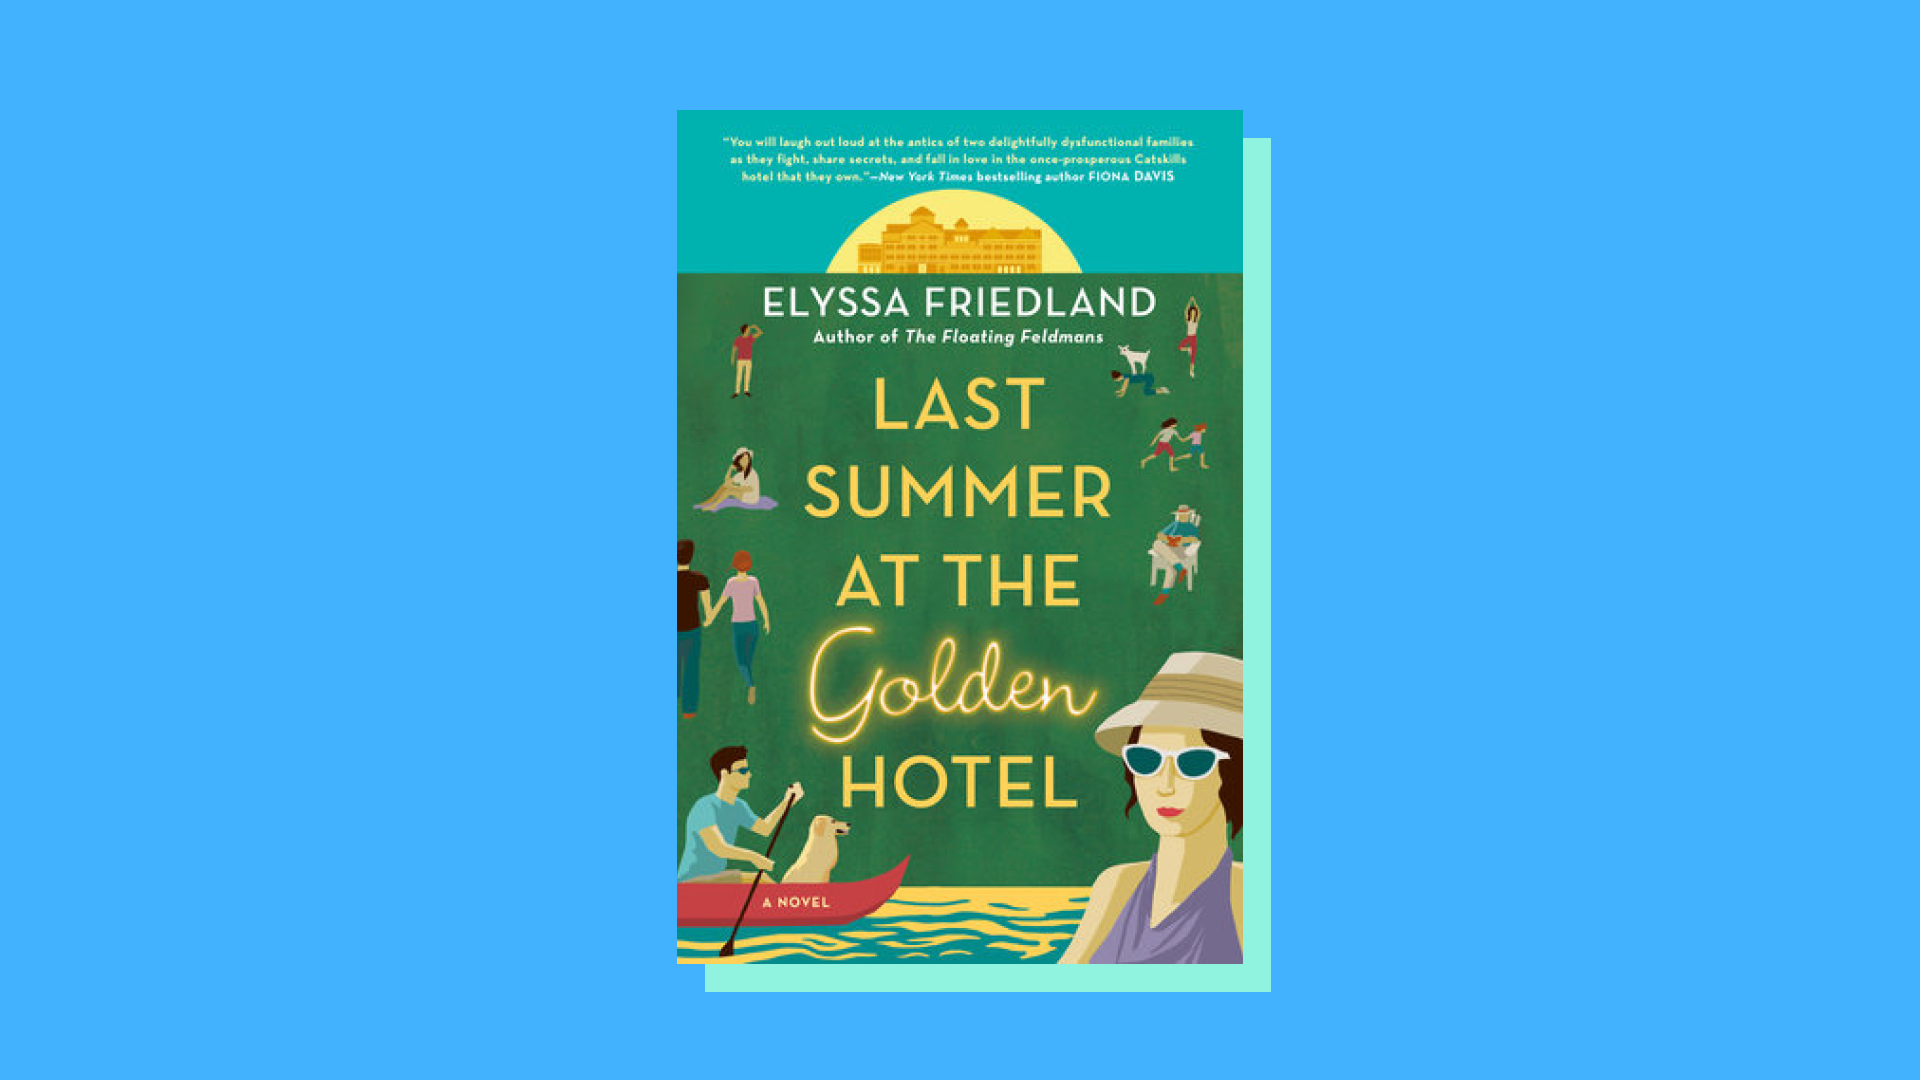 “Last Summer at the Golden Hotel” by Elyssa Friedland  